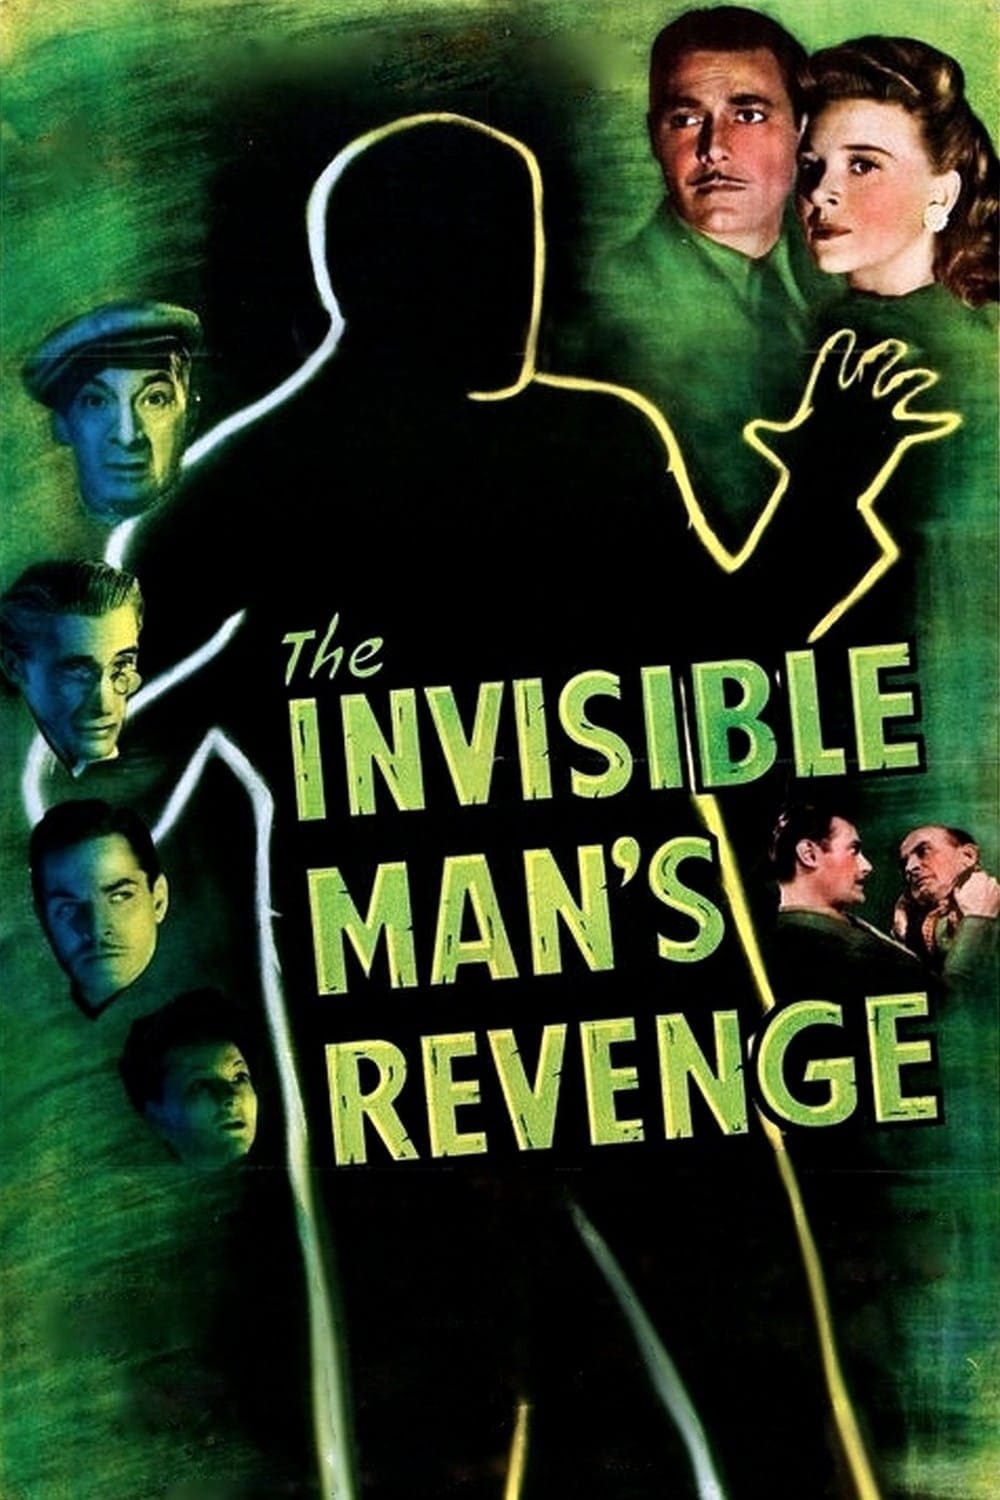 La Vengeance de l'homme invisible